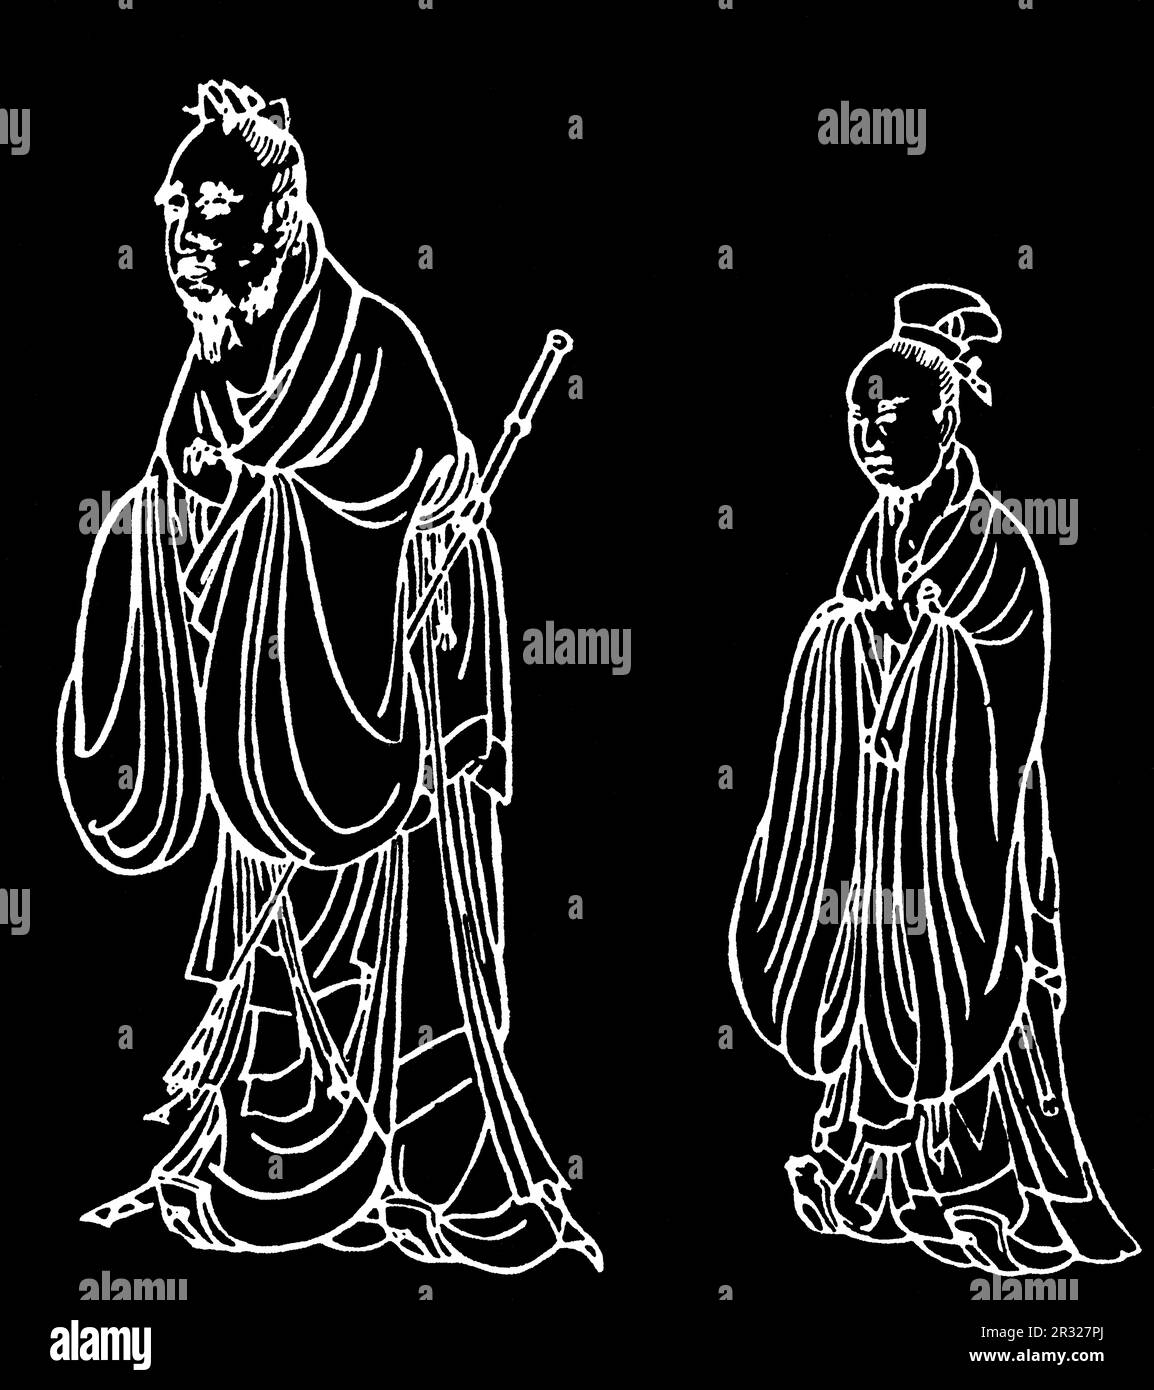 Konfuzius und Yan Hui, 1095. Konfuzius (C551-c479BC) war ein chinesischer Philosoph und Politiker der Frühlings- und Herbstperiode. Von einem Reiben einer eingenähten Steintafel gesponsert von Kong Duanyou im Tempel des Konfuzius, Qufu, Shandong, China. Nördliche Song-Dynastie, 1095. Stockfoto